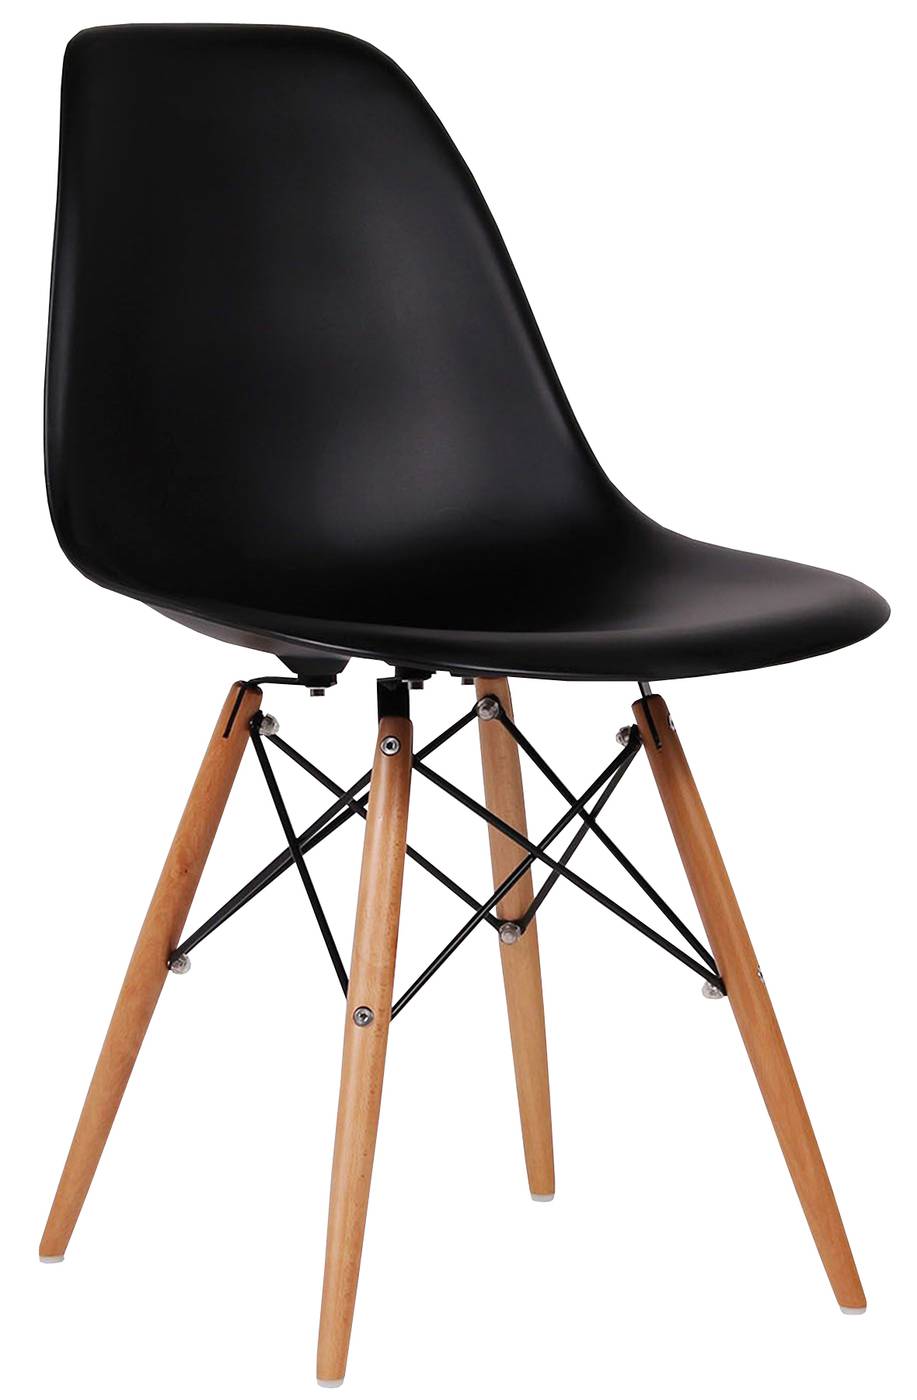 Silla de comedor. Patas de madera, con respaldo y asiento de polipropileno color negro.